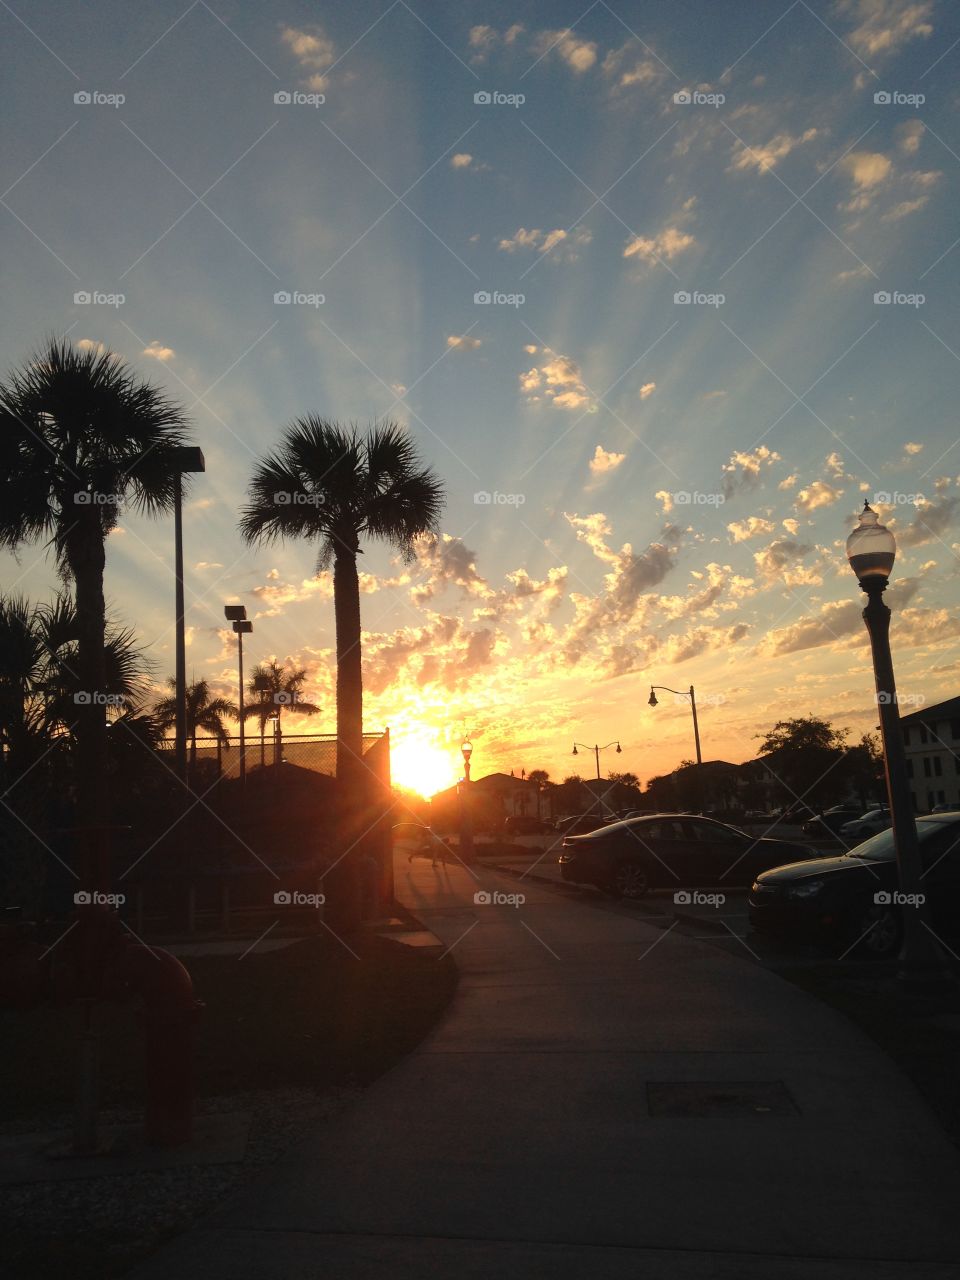 Amazing Florida Sunset